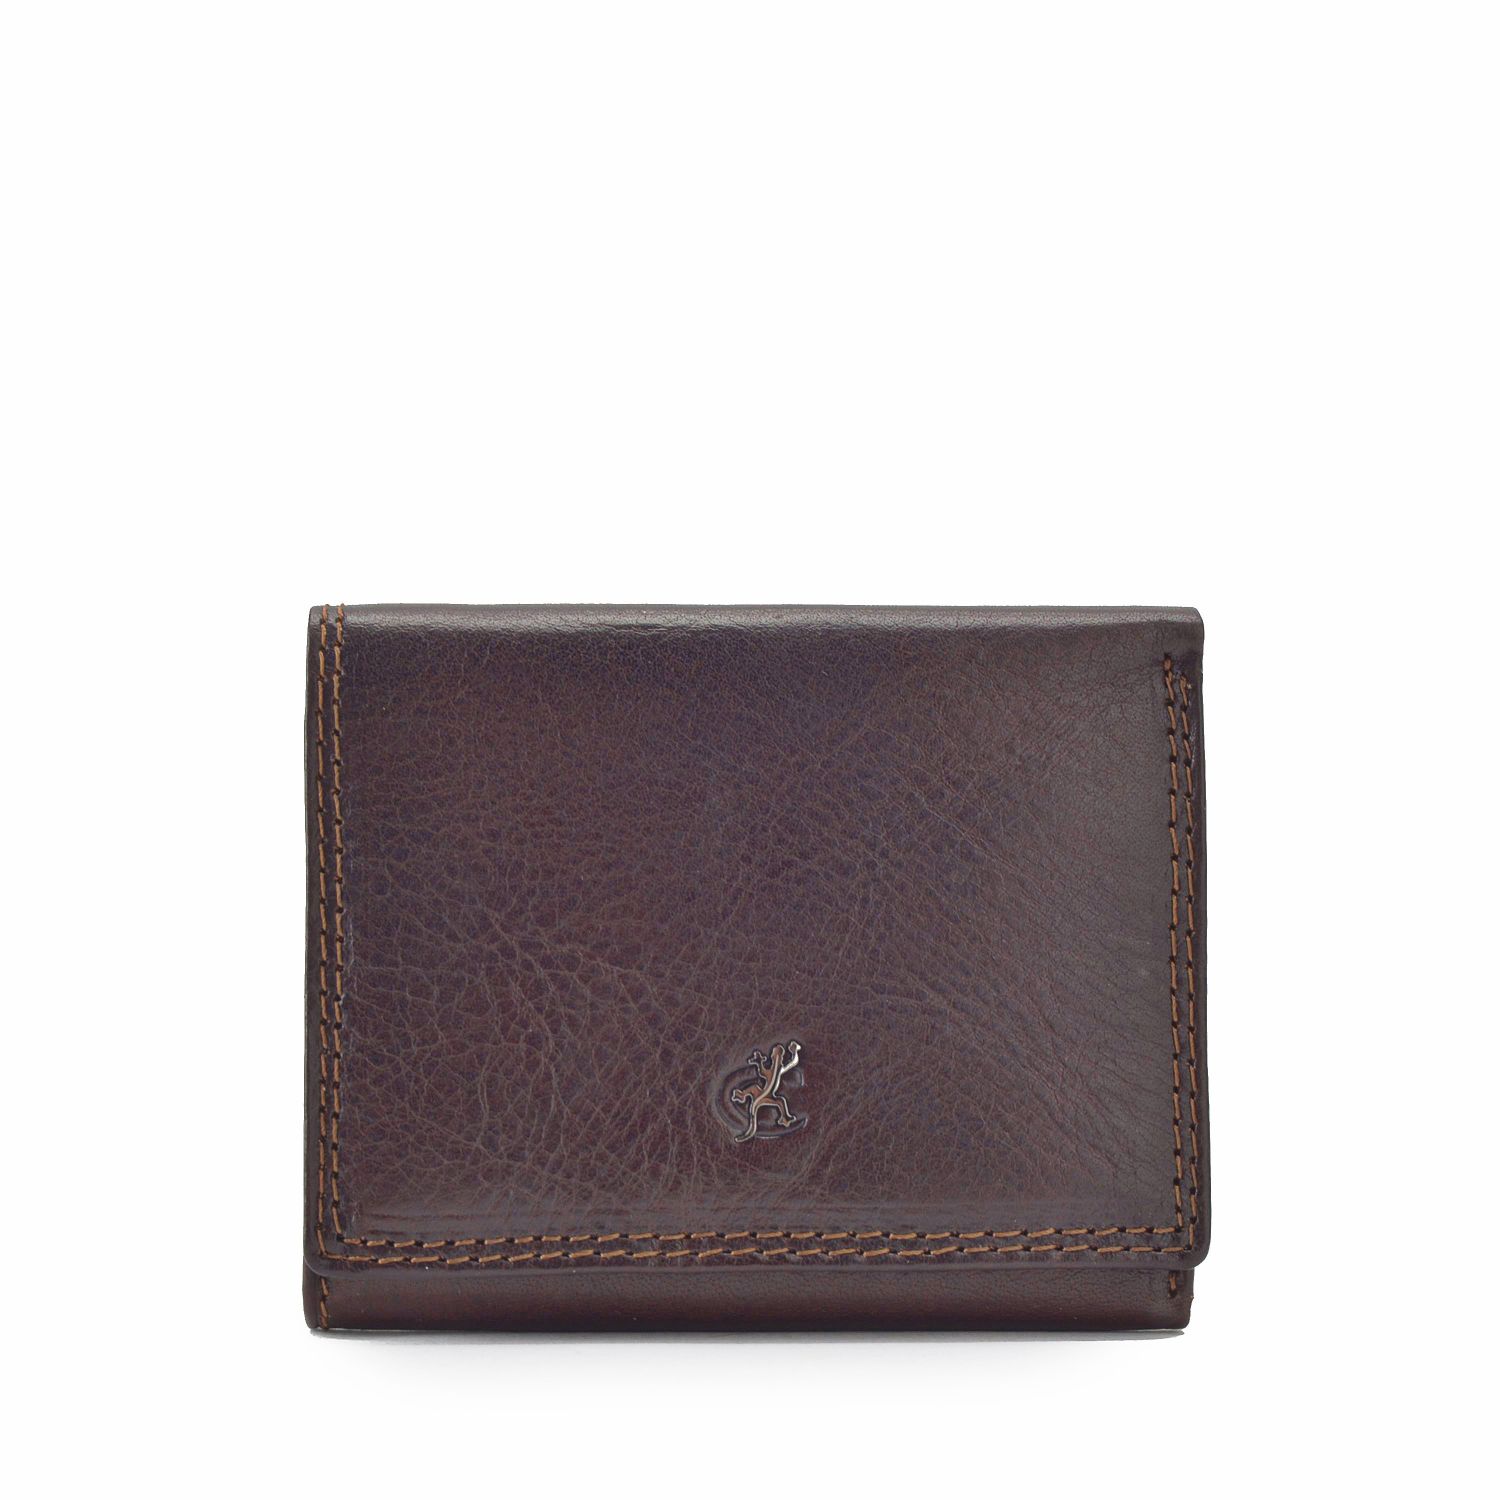 Hnědá dámská kožená peněženka Cosset Komodo 4508